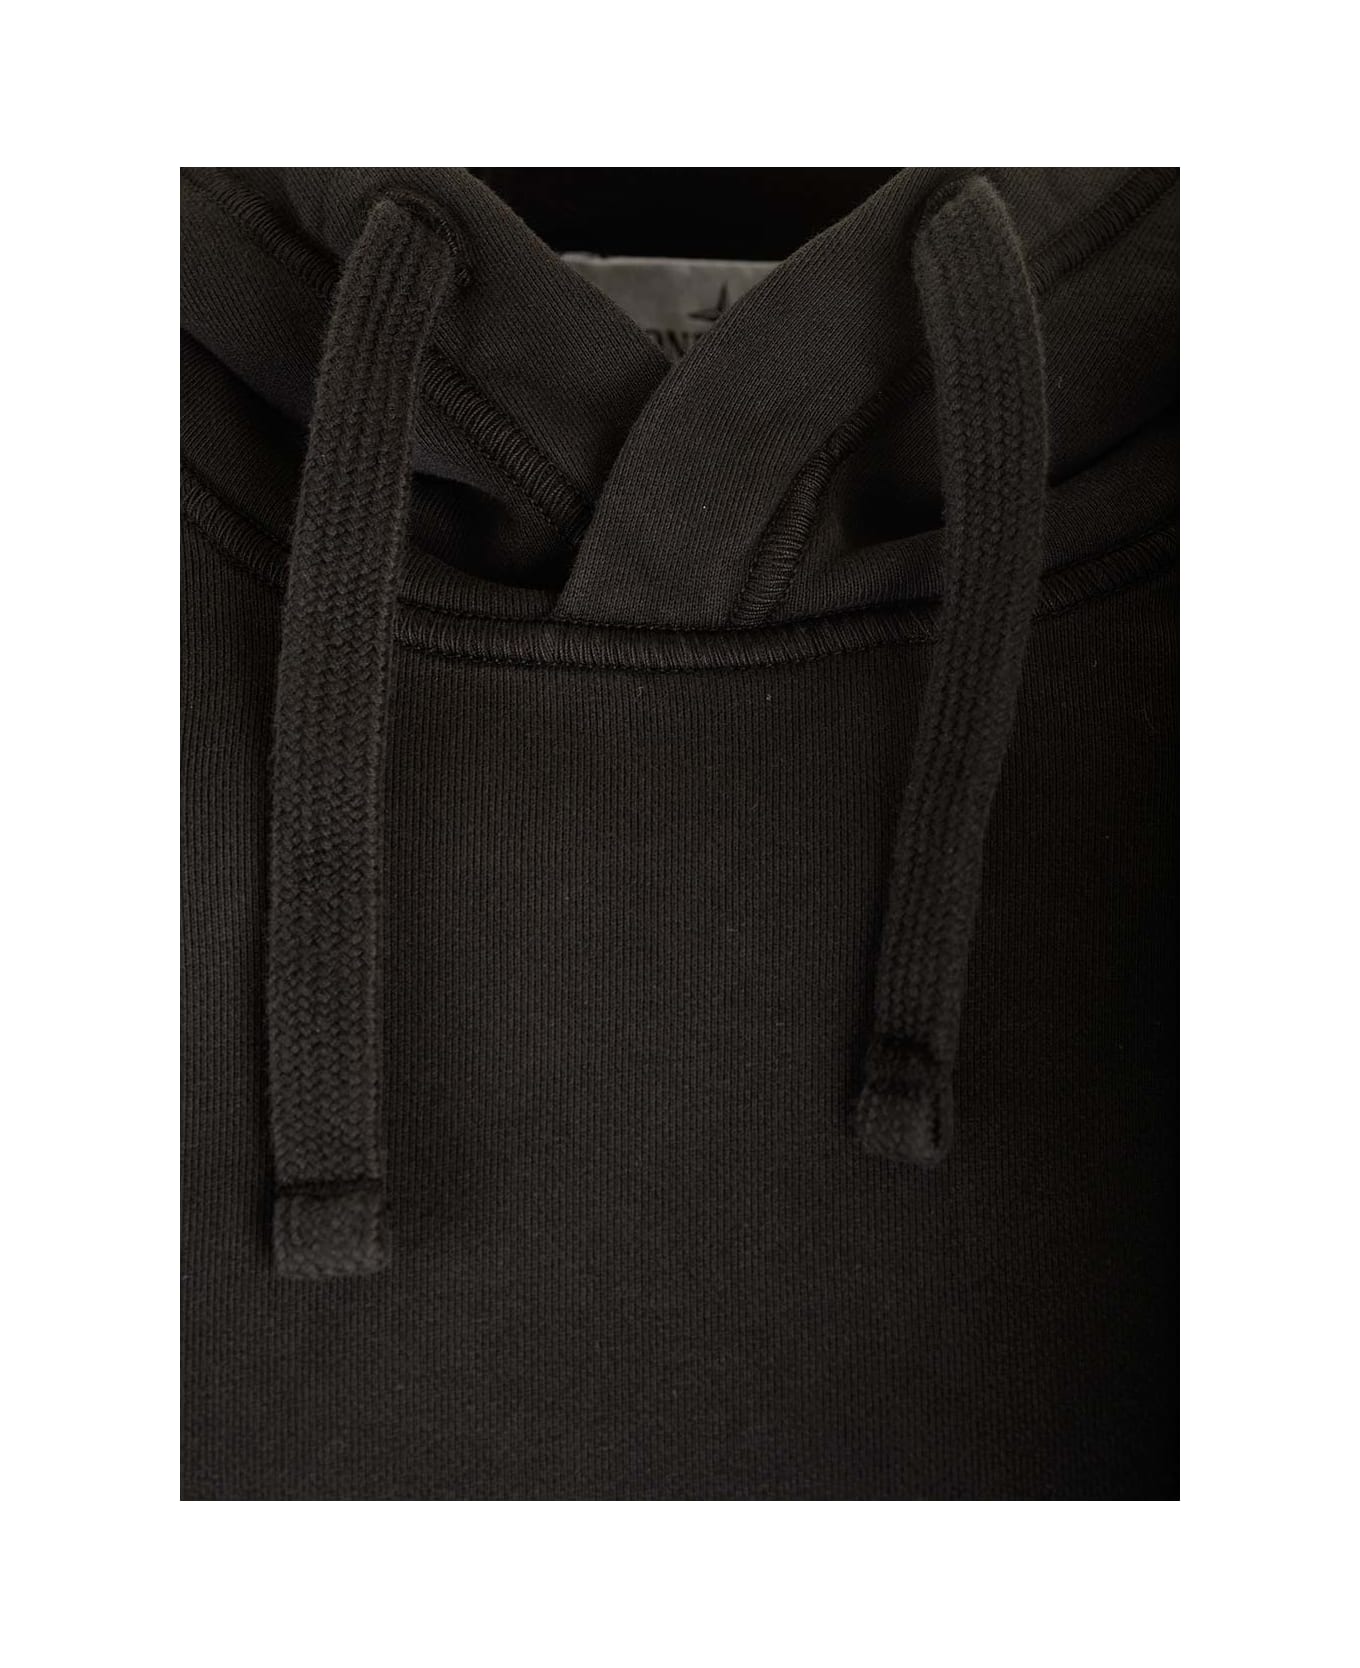 Stone Island Hooded Sweatshirt - Nero